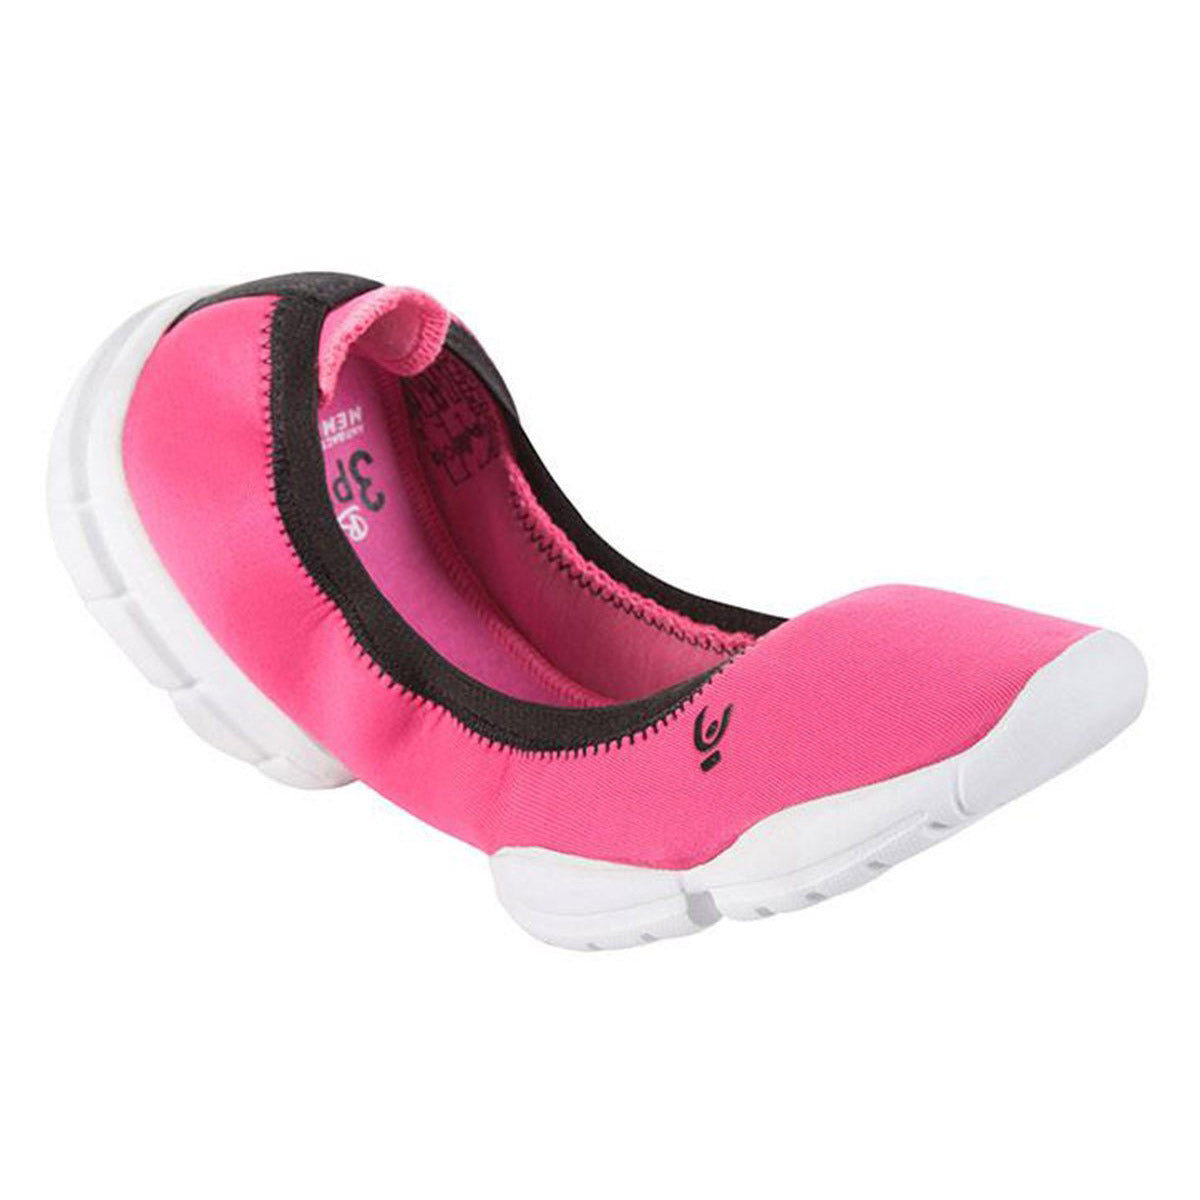 Freddy Pink 3D Pro Ballerina Shoe